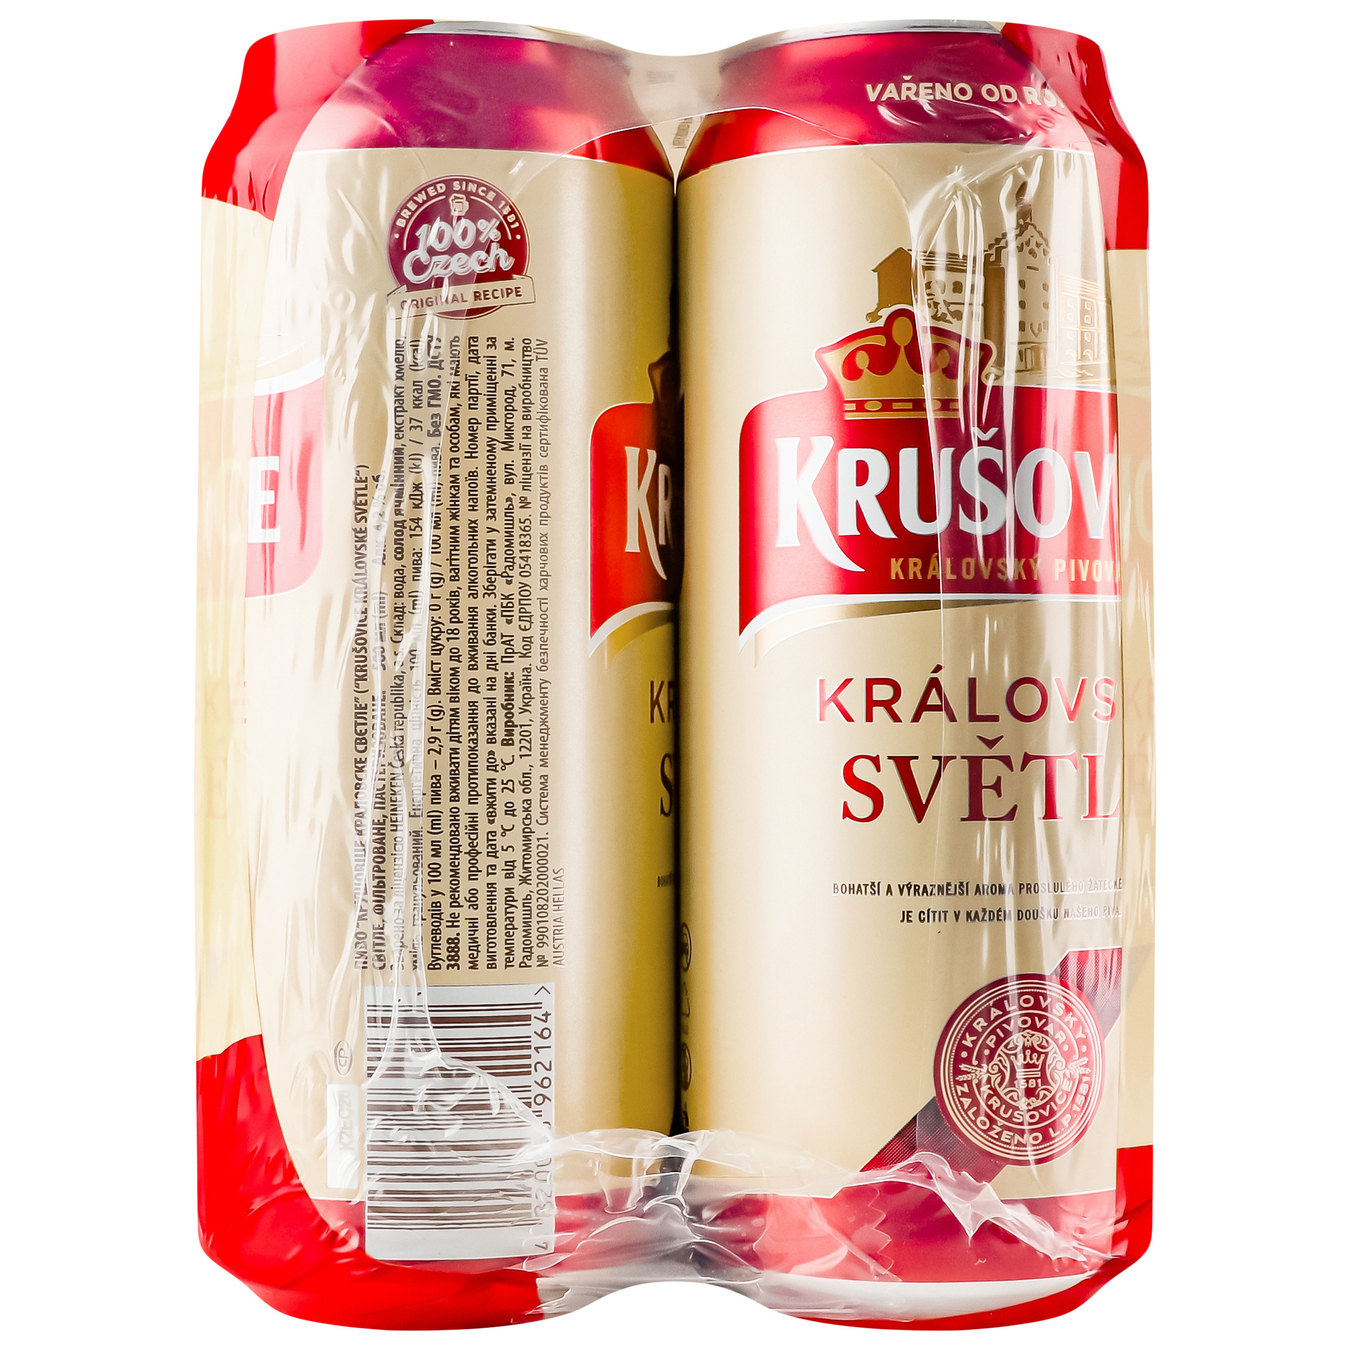 Light beer Krusovice Kralovske 4.2% 4*0.5 l 5